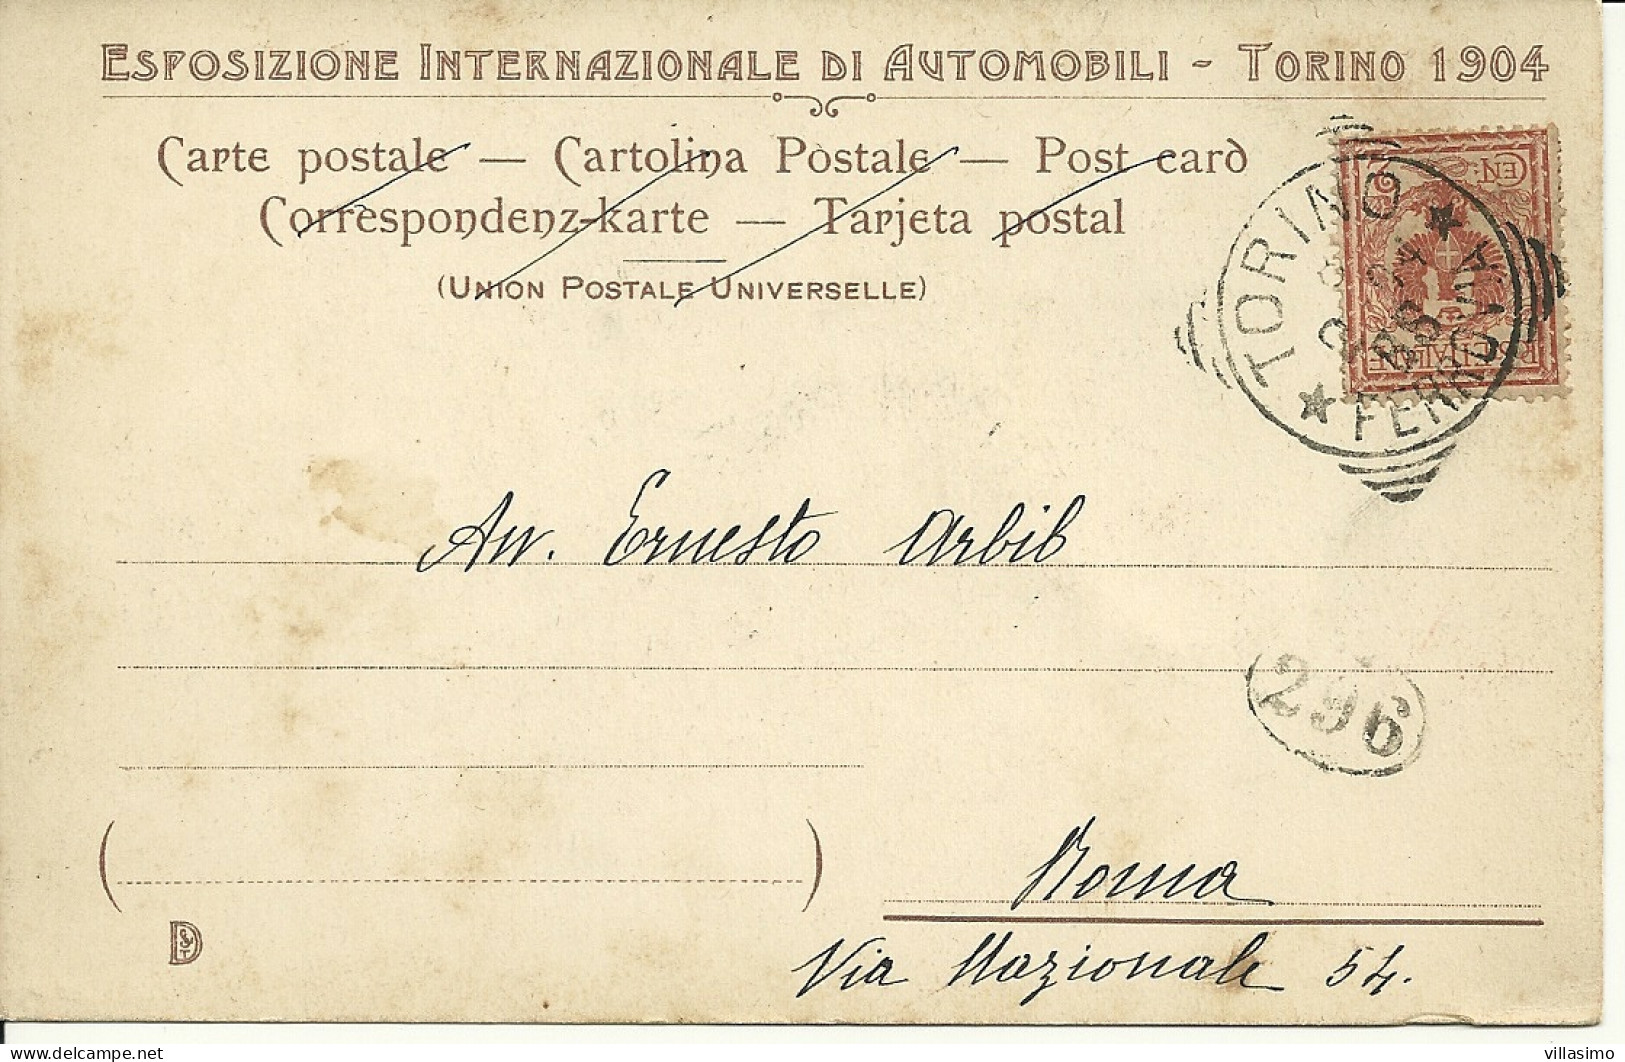 ESPOSIZIONE INTERNAZIONALE DI AUTOMOBILI, TORINO 1904 - DOCCIA INVOLONTARIA - ILL. ATTILIO MUSSINO -  V. 1904 - Expositions